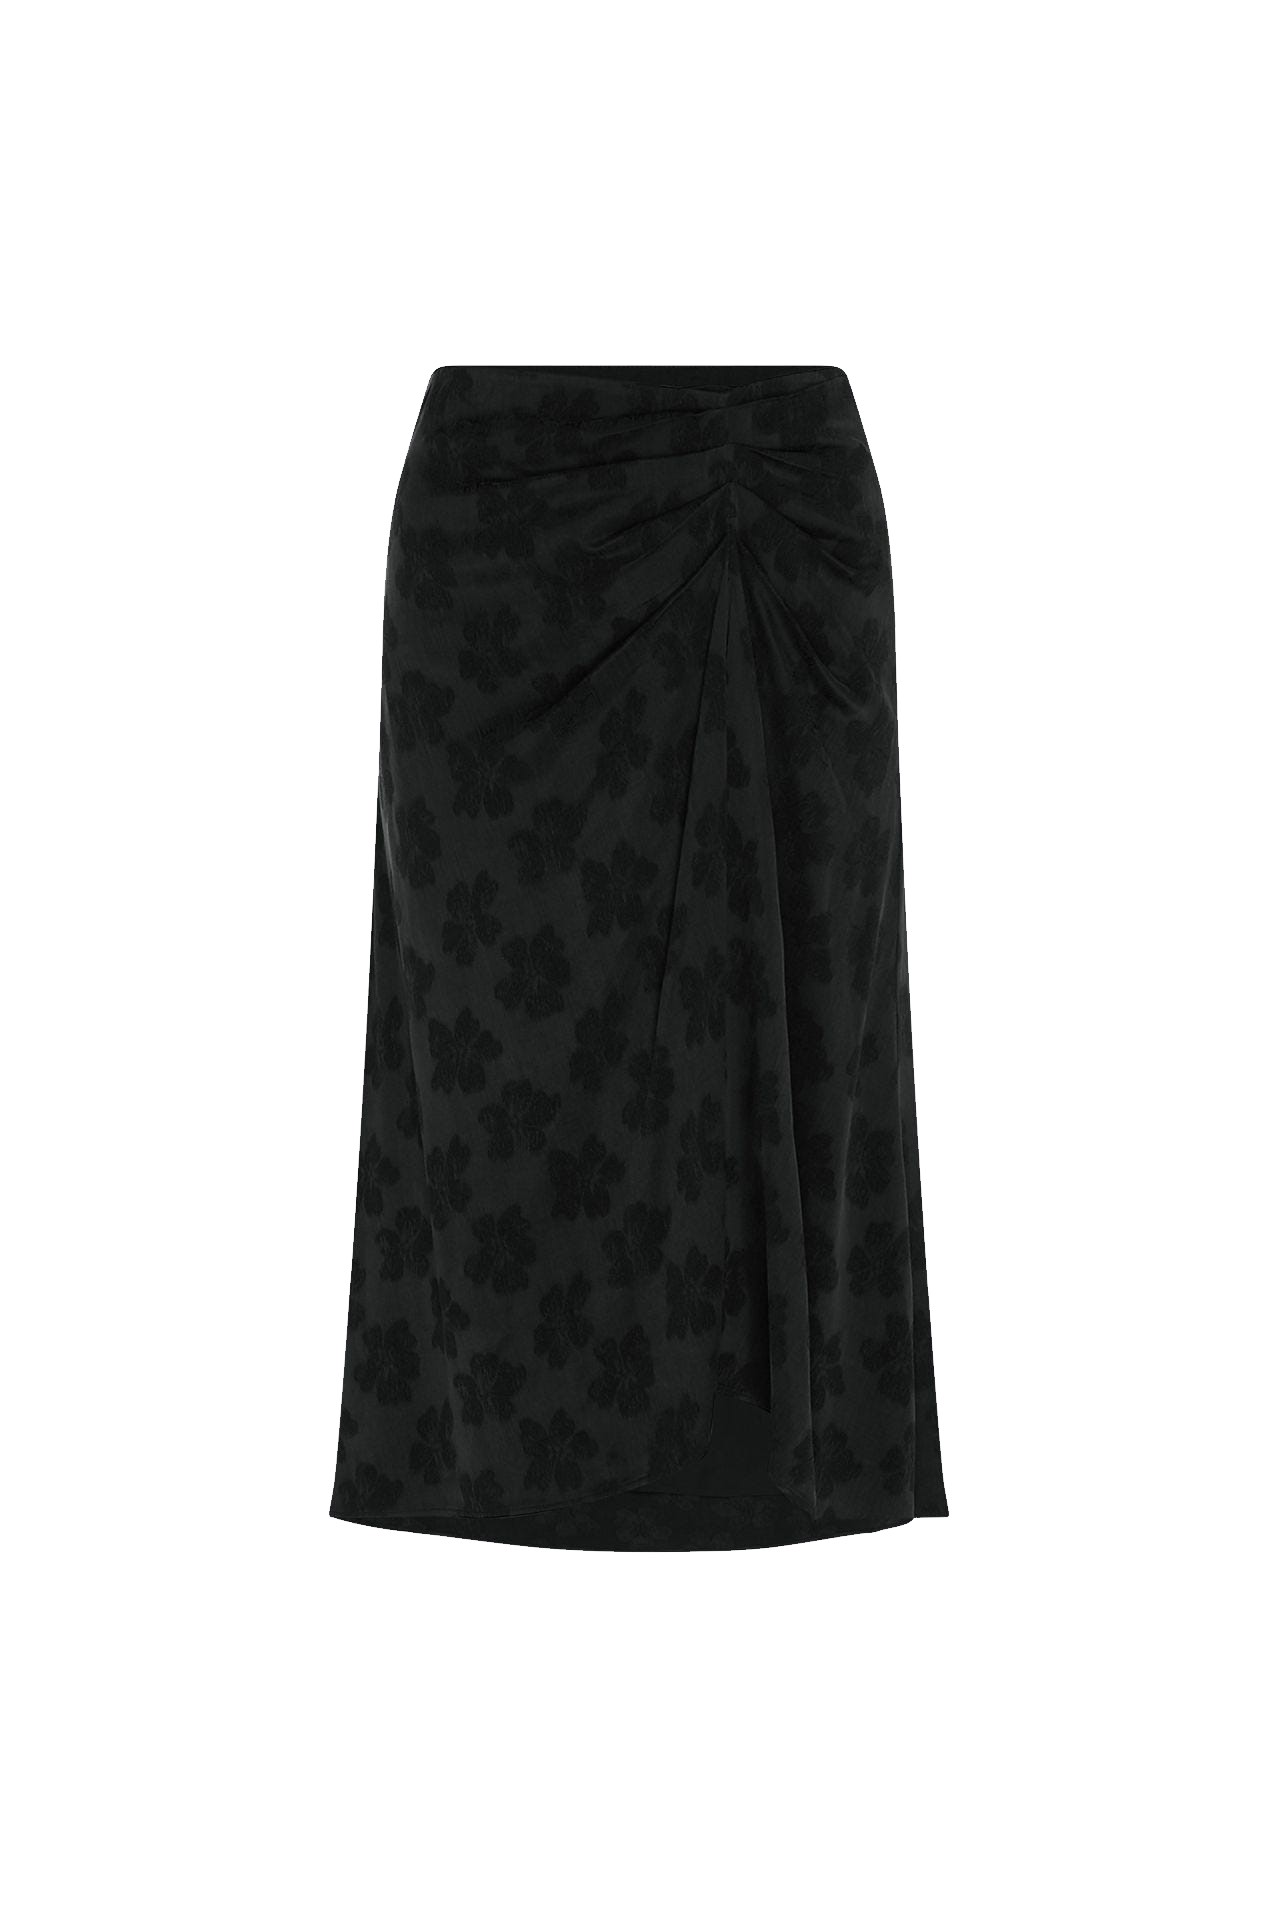 Zwarte dames rok Fabienne Chapot - Jerry skirt black